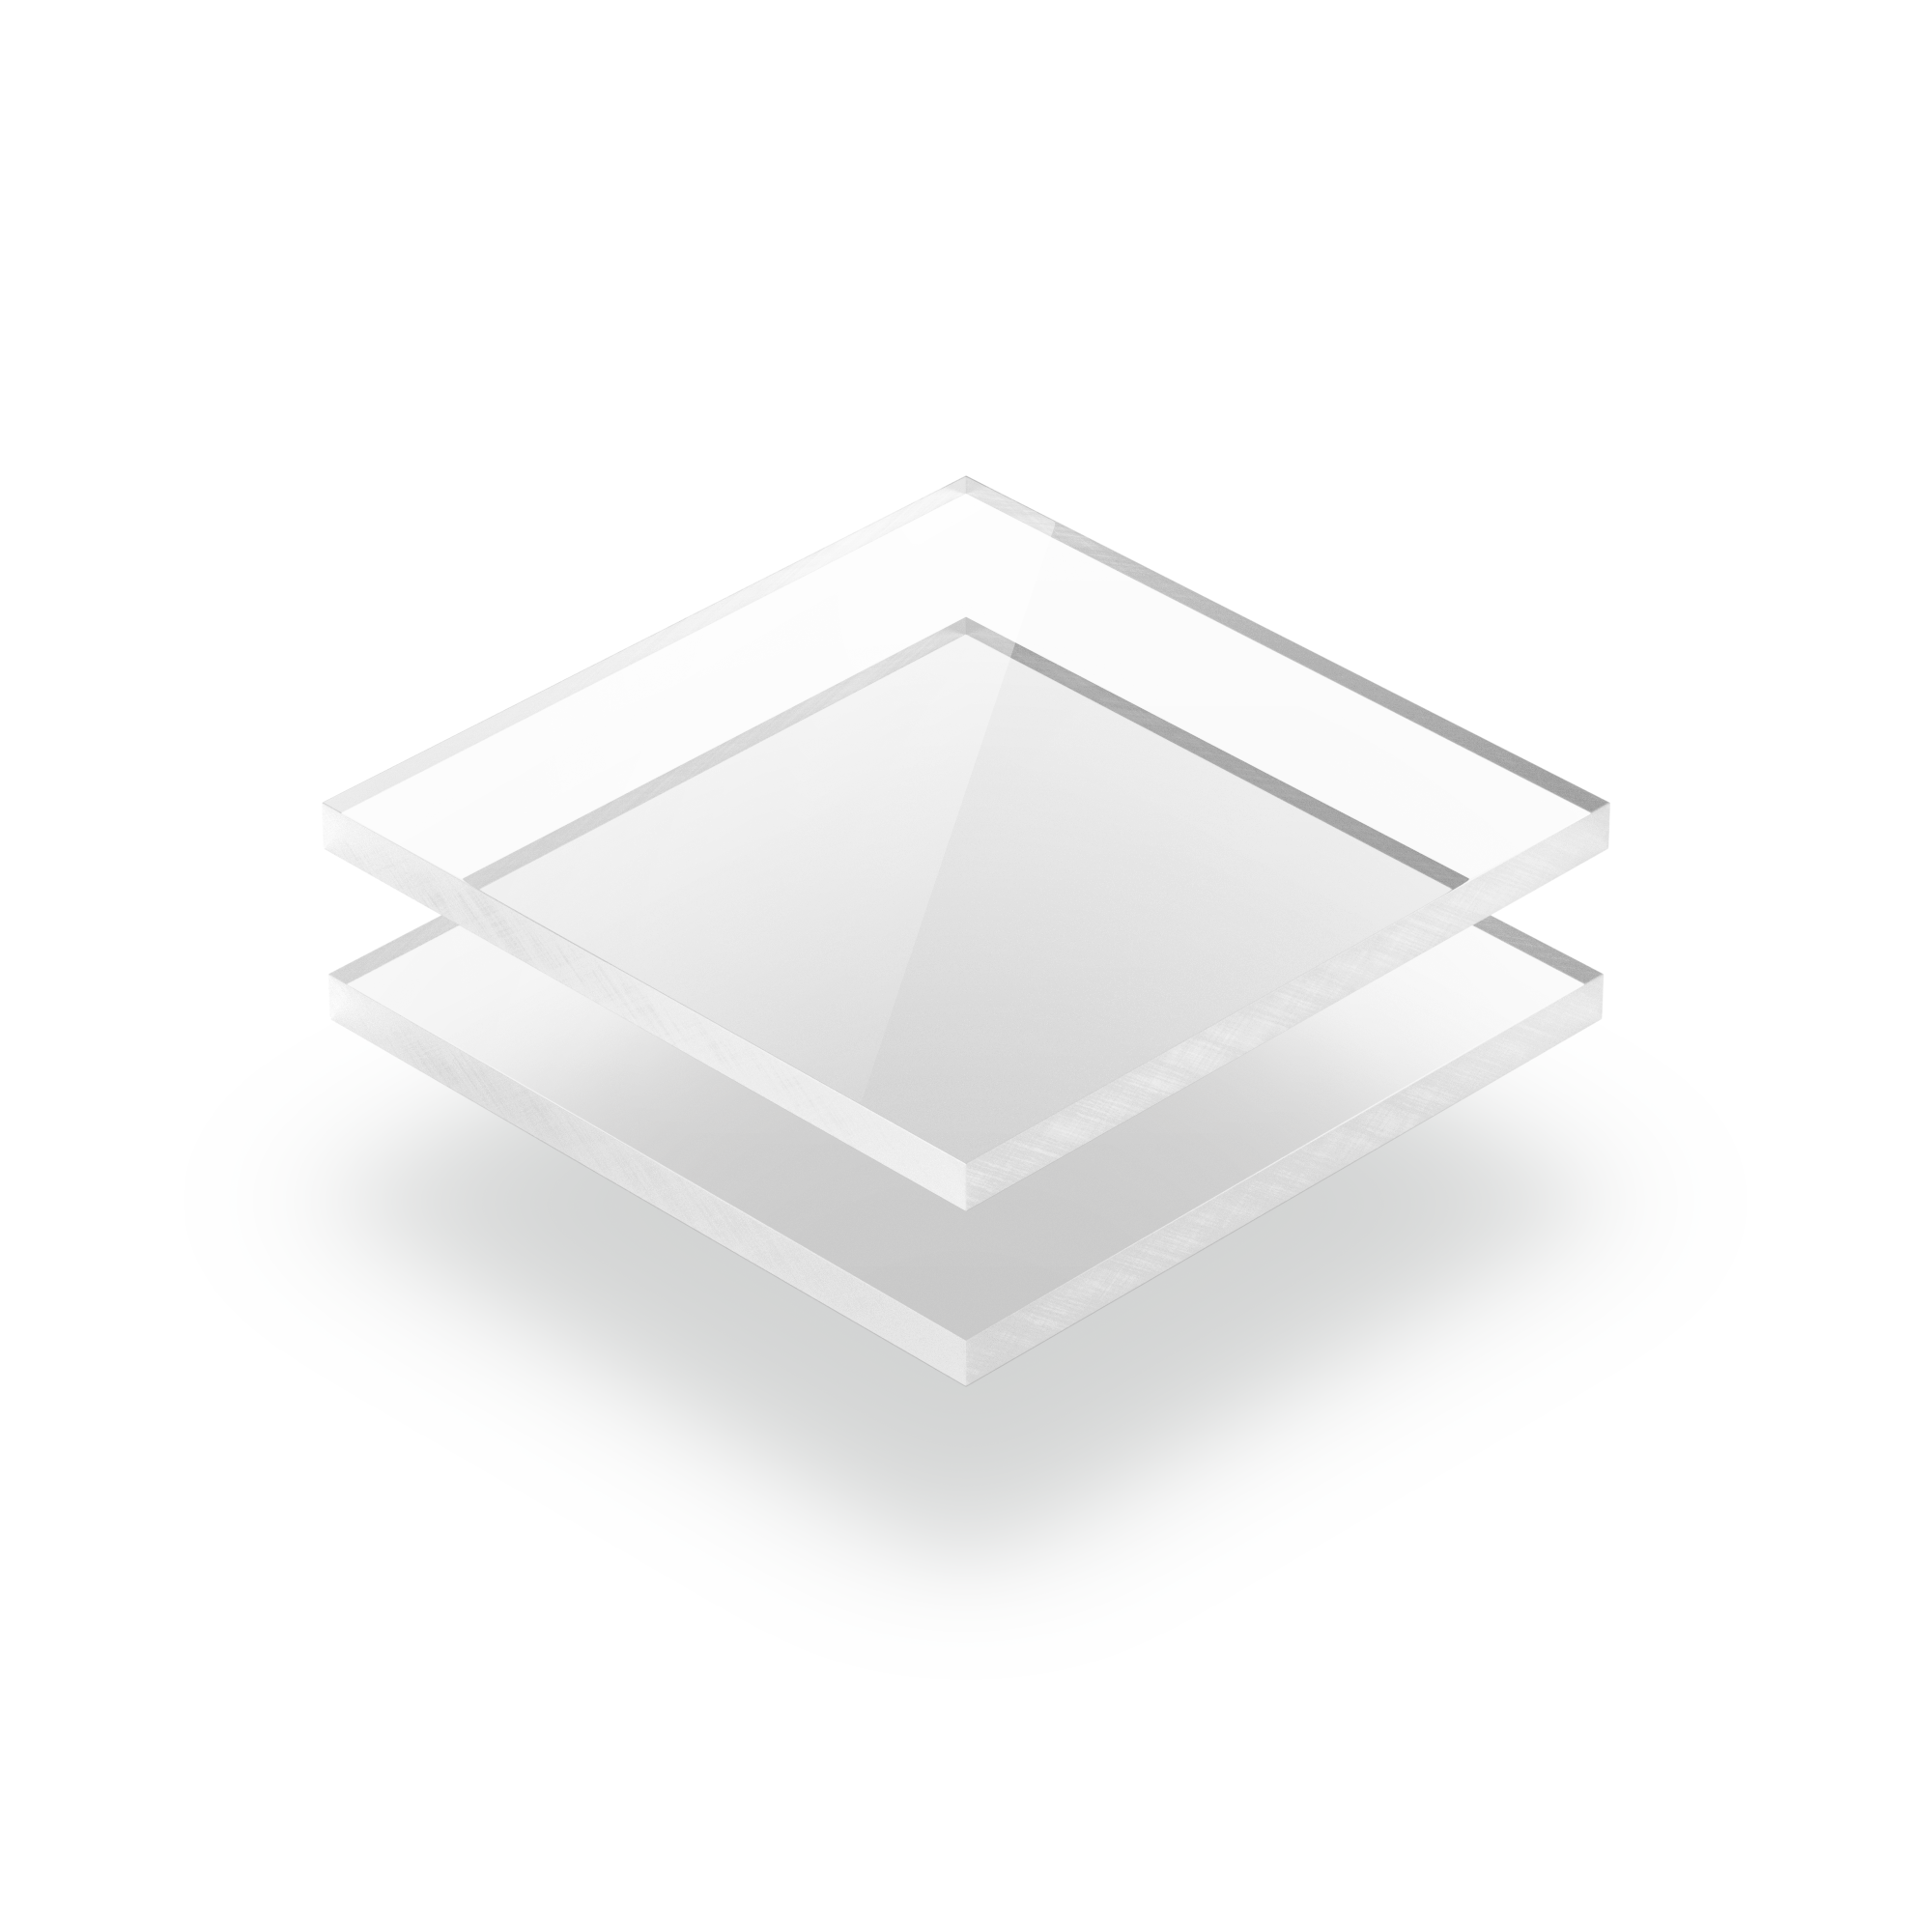 https://plaqueplastique.fr/wp-content/uploads/2012/01/Plexiglass-transparent.png